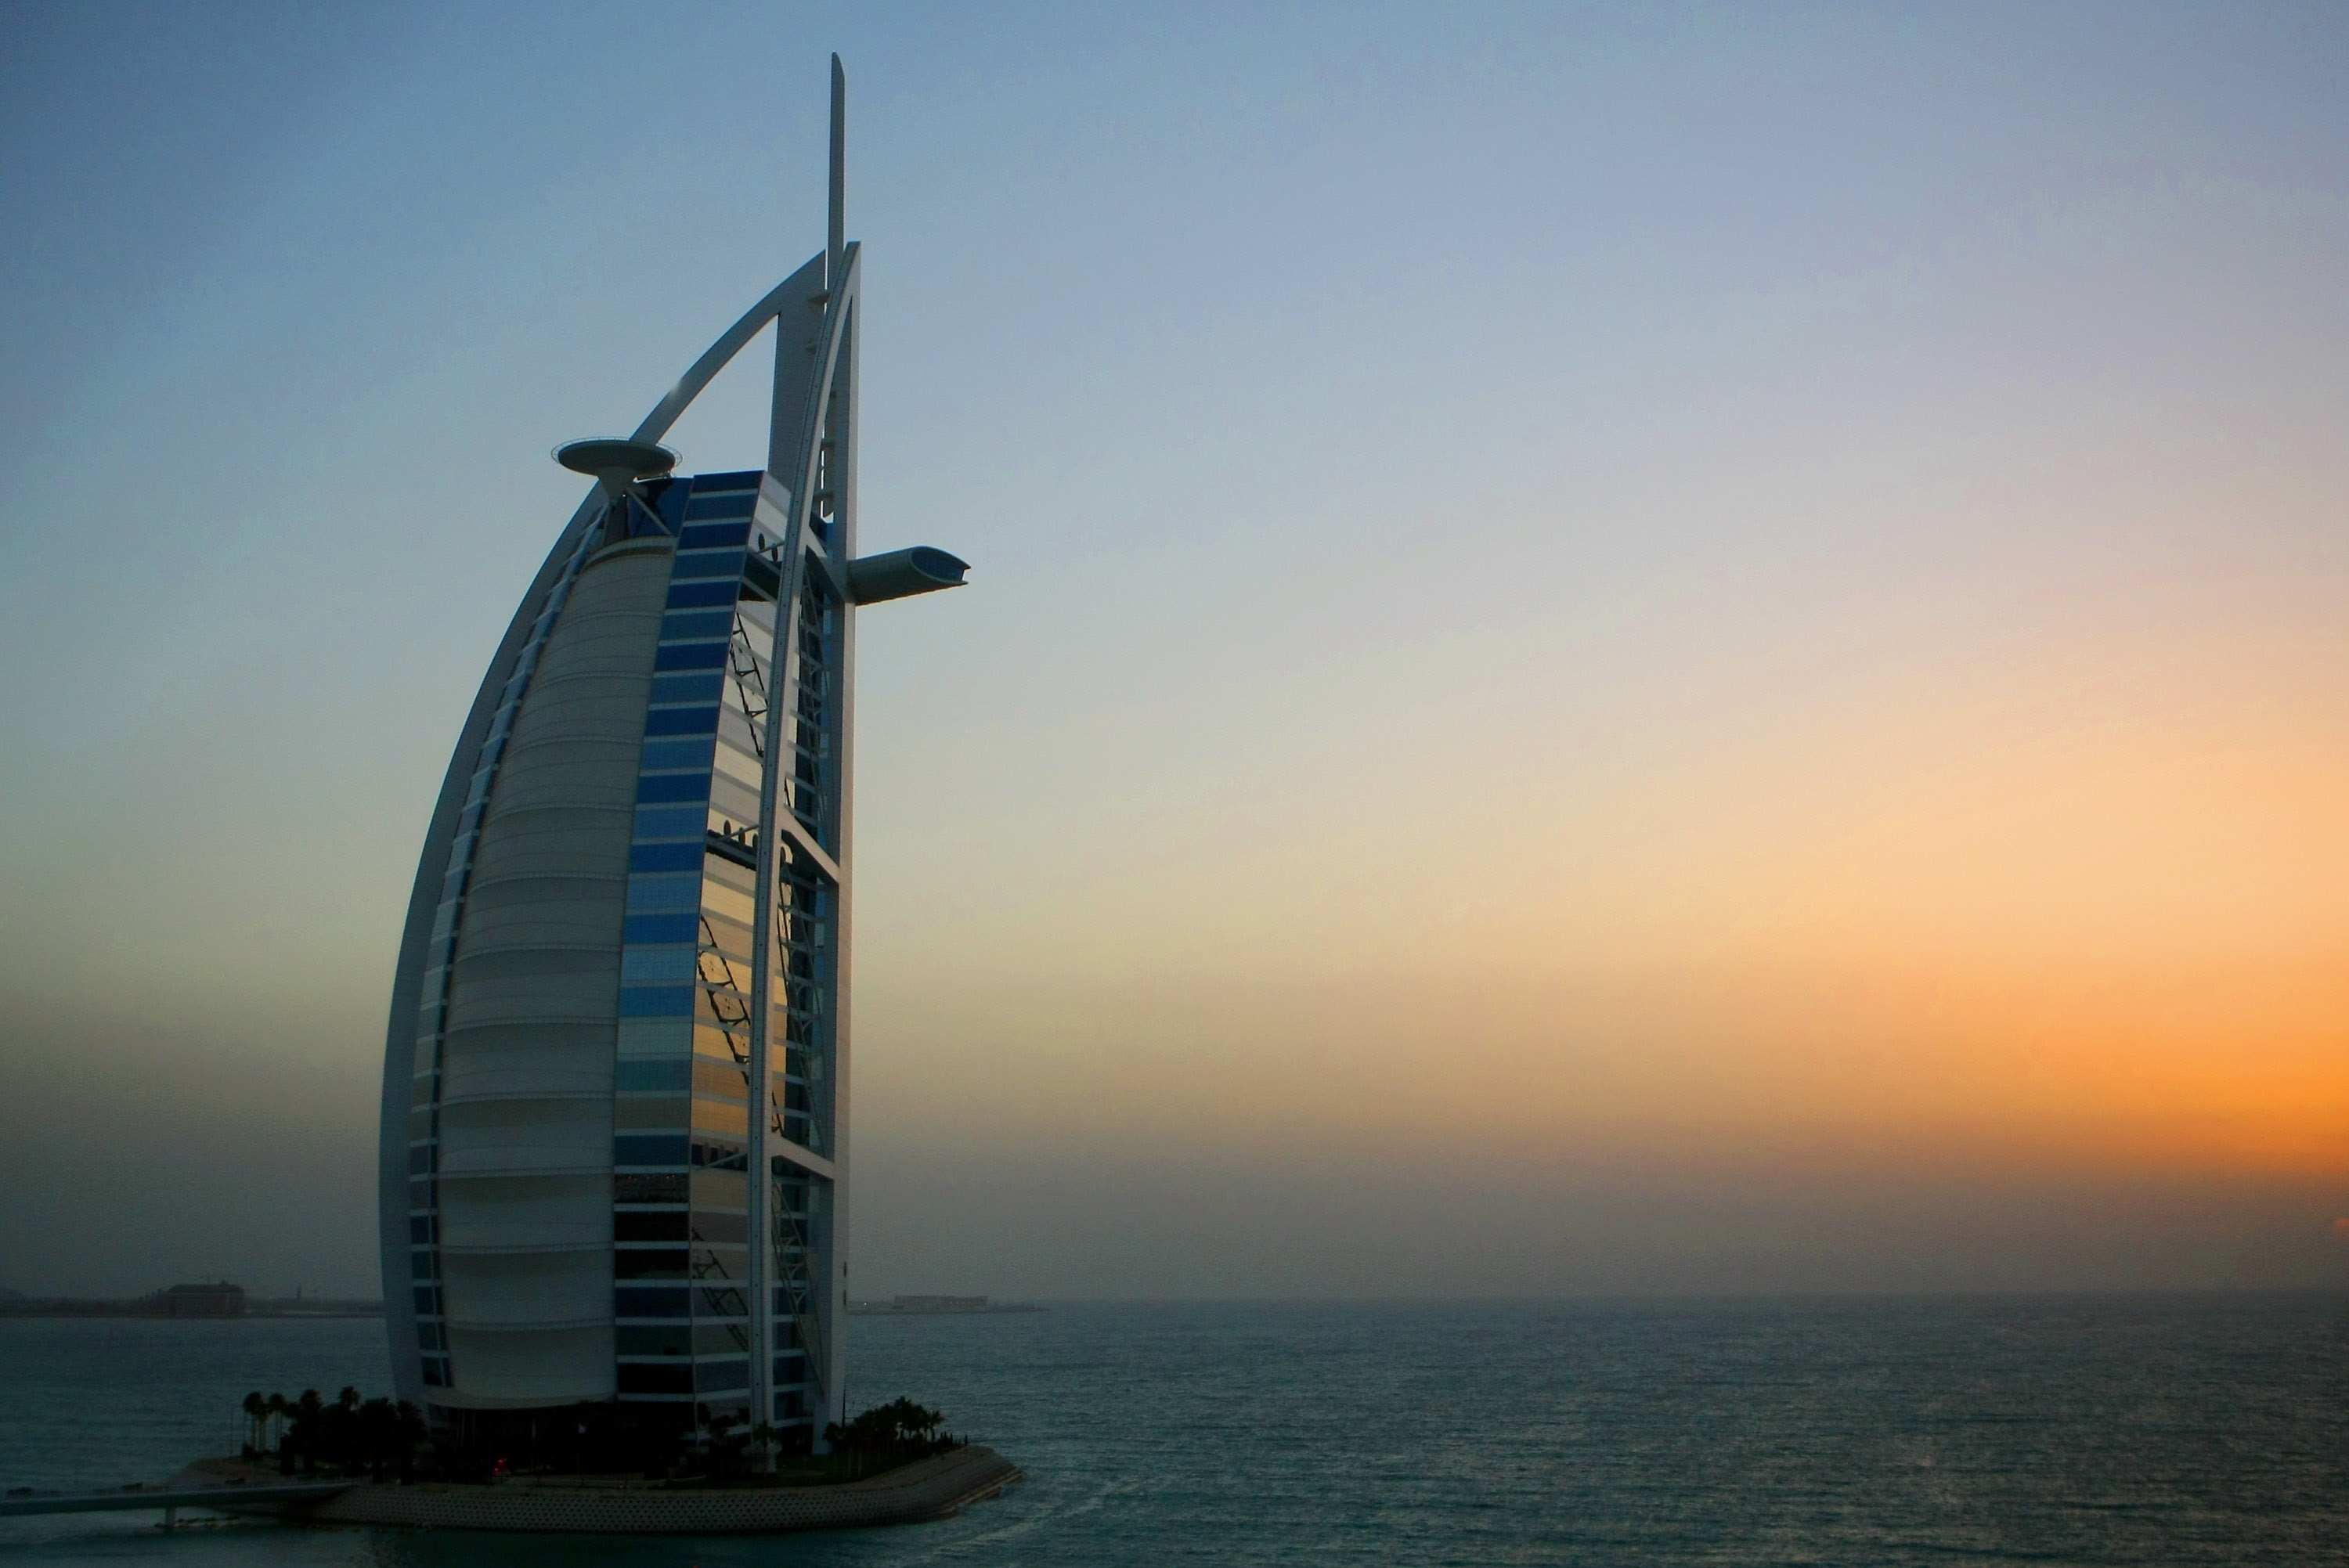 Бурж Ал Араб (Дубай) – този 60-етажен хотел с формата на платноходка, разположен на свой собствен остров, е проектиран да бъде национална икона. Но истинската му красота се крие в интериора: има почти 600-метров атриум – най-високият в света.